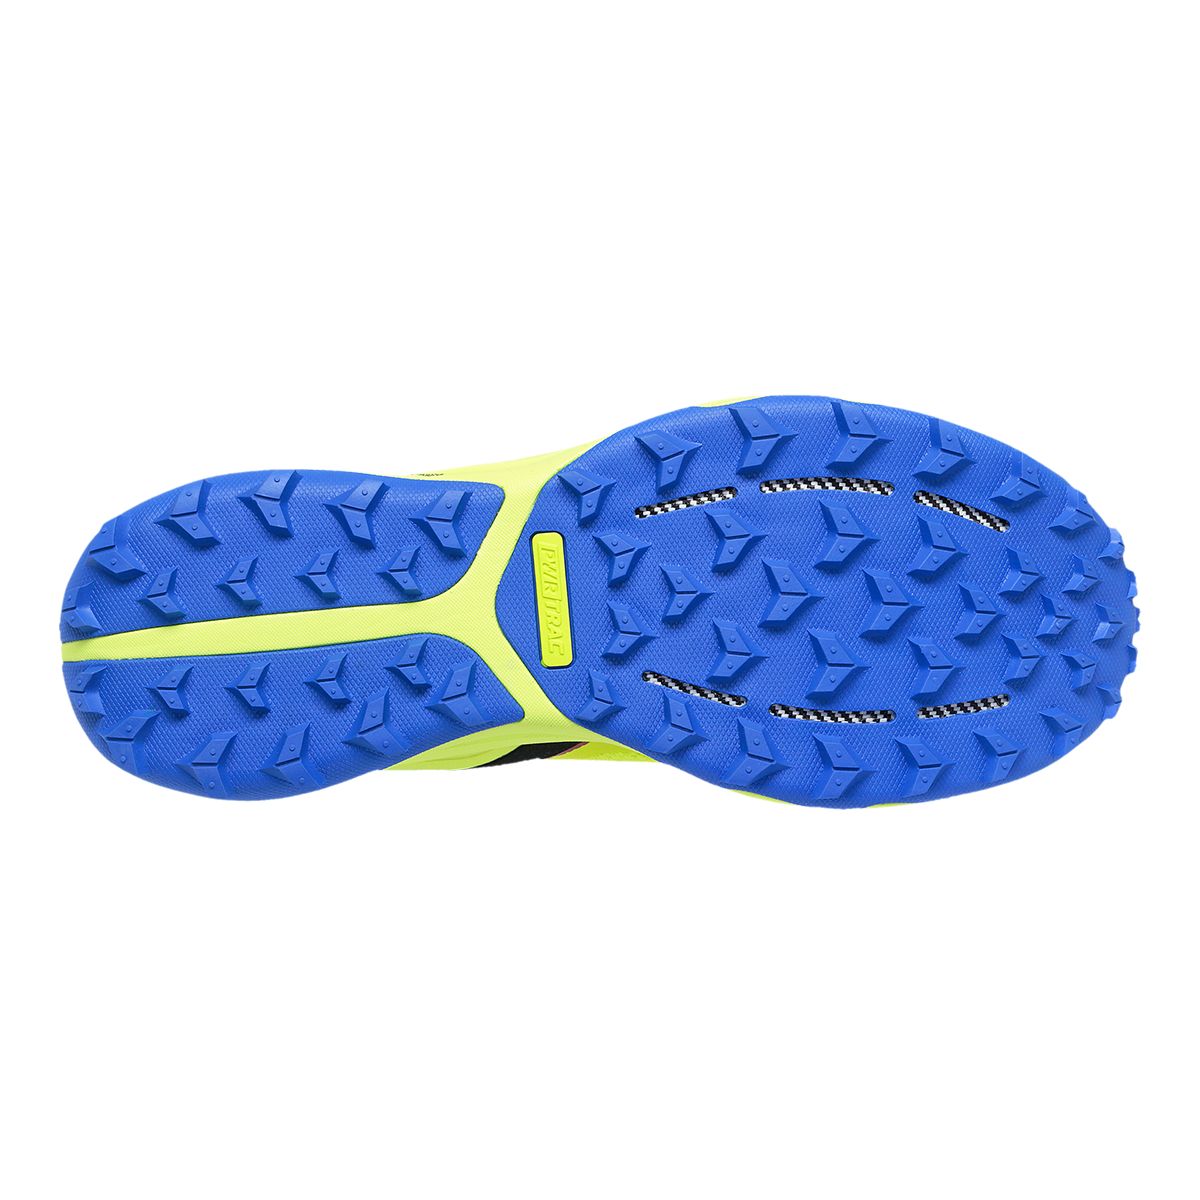 Saucony Men's Xodus Ultra Lightweight Flexible Trail Running Shoes